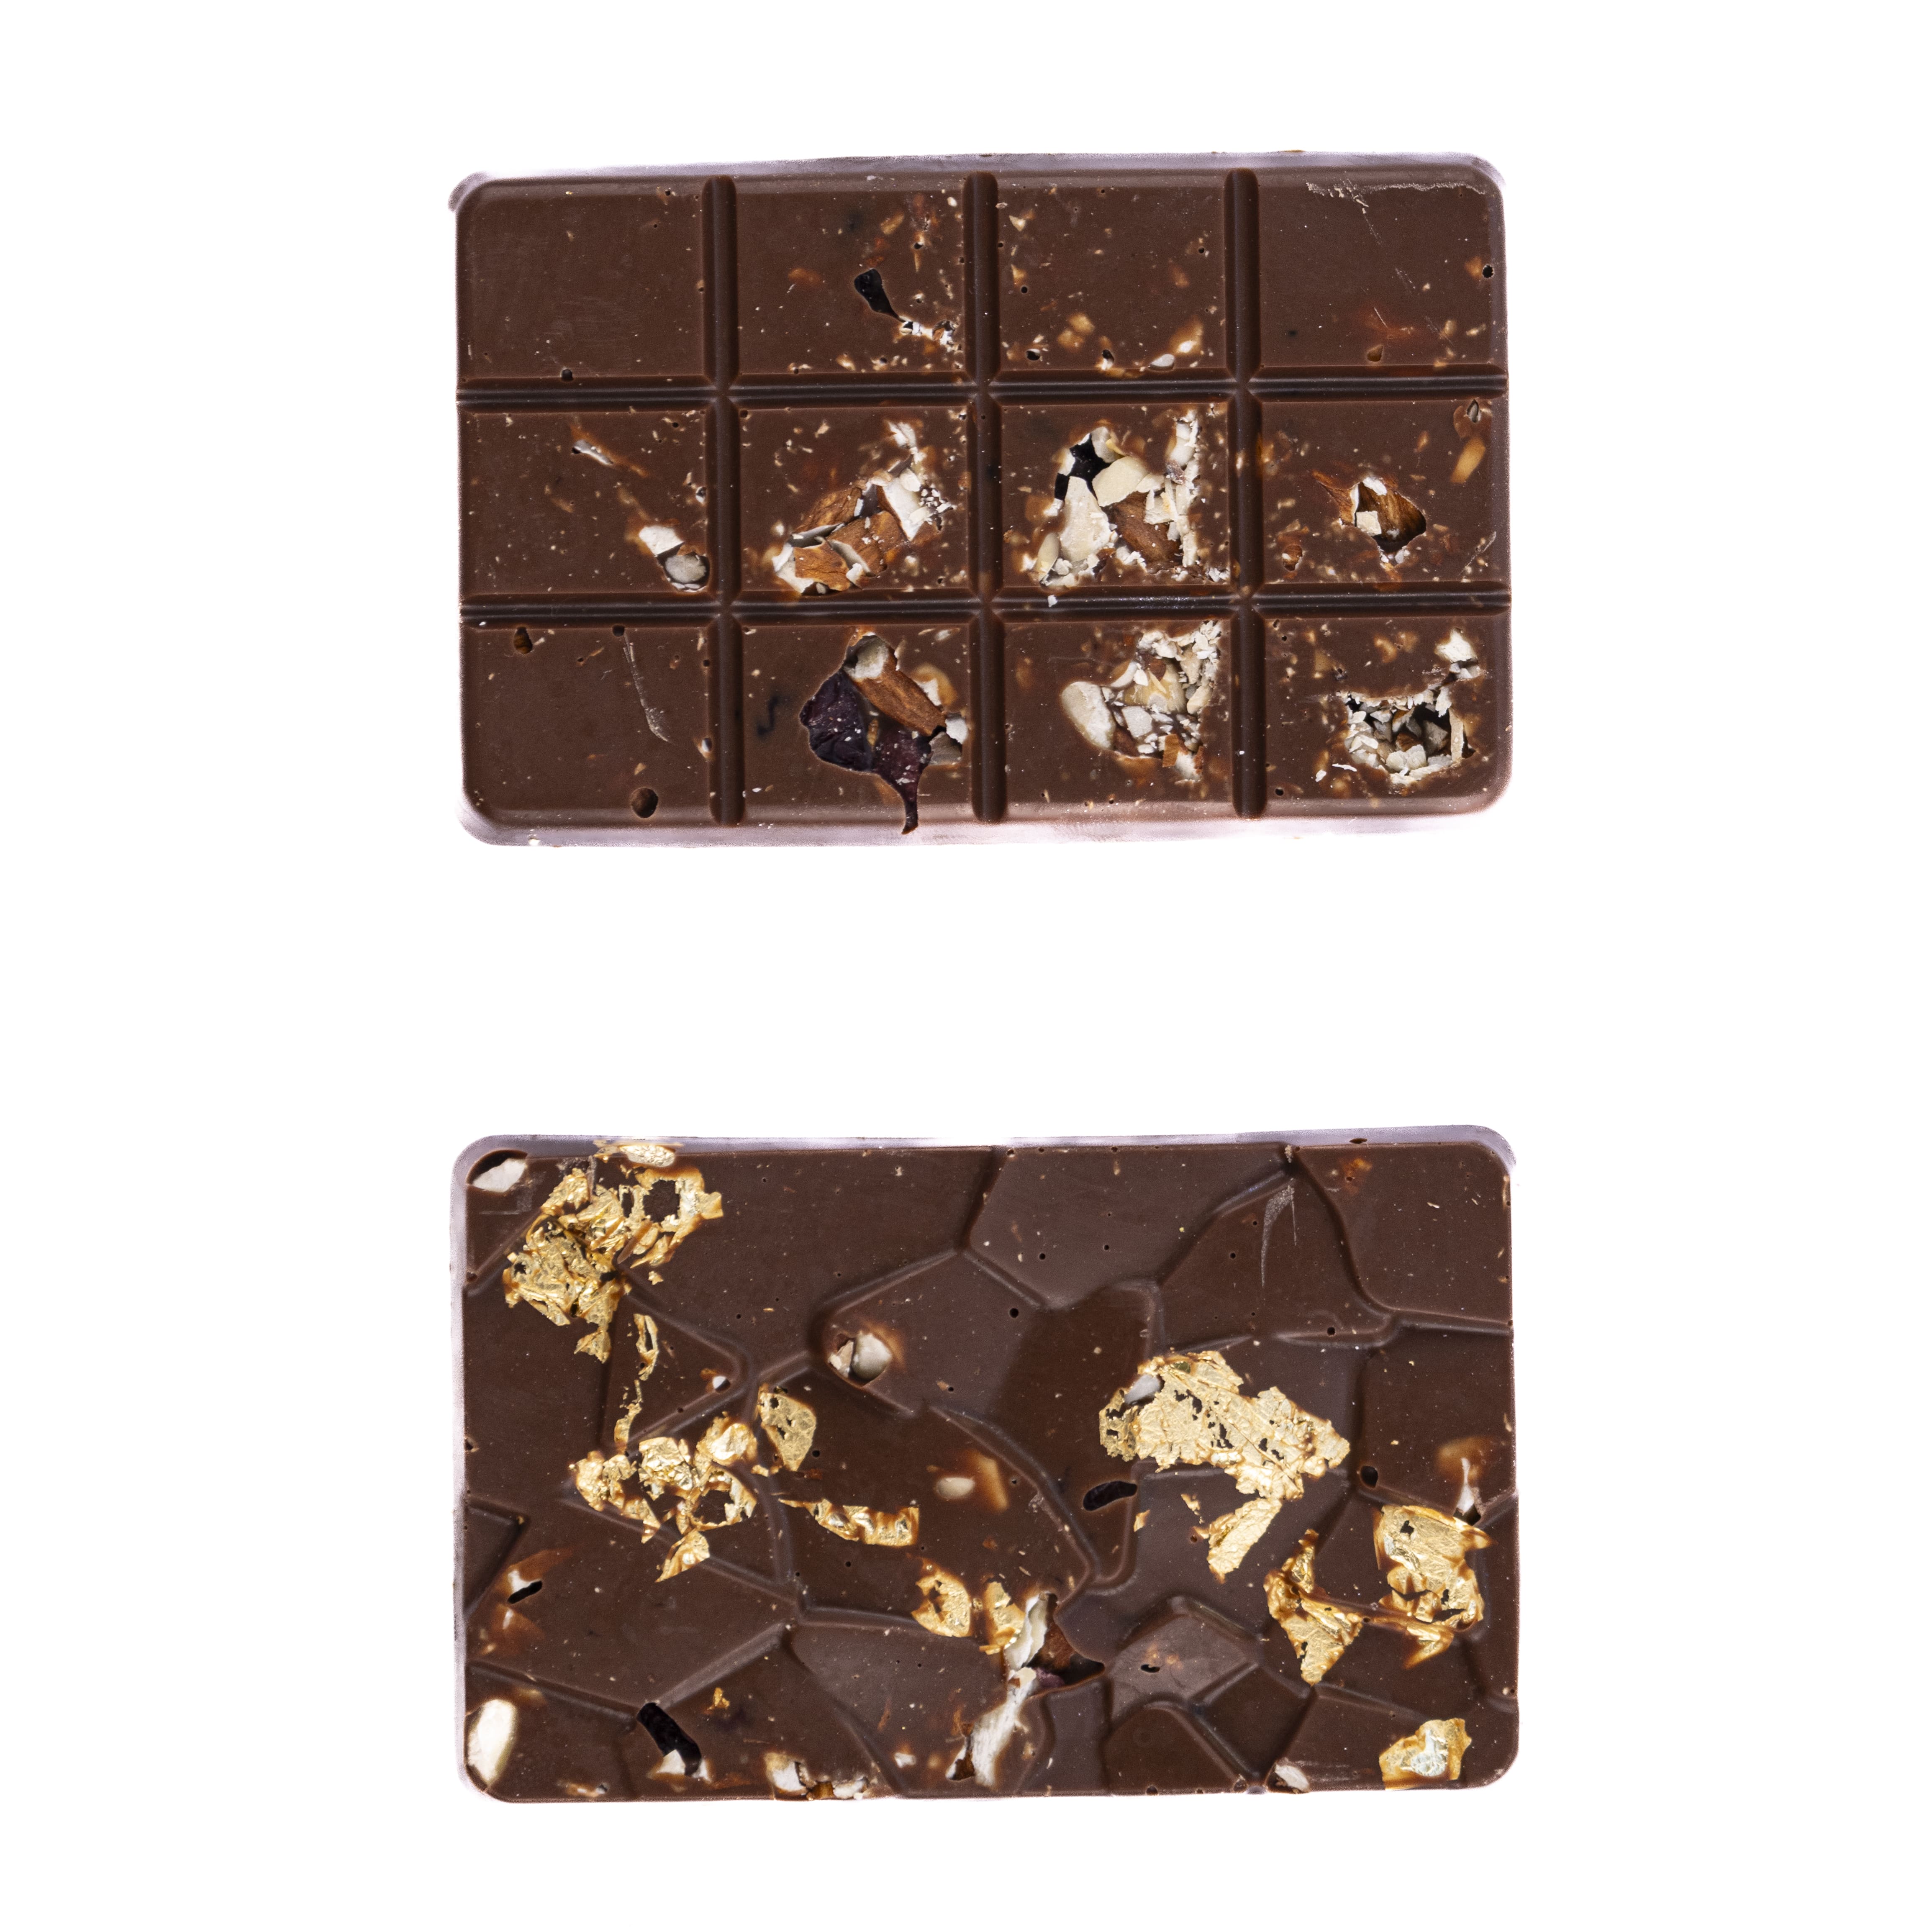 Sjokoladeplate 21 | Kjøbmandsgaarden Chocolate